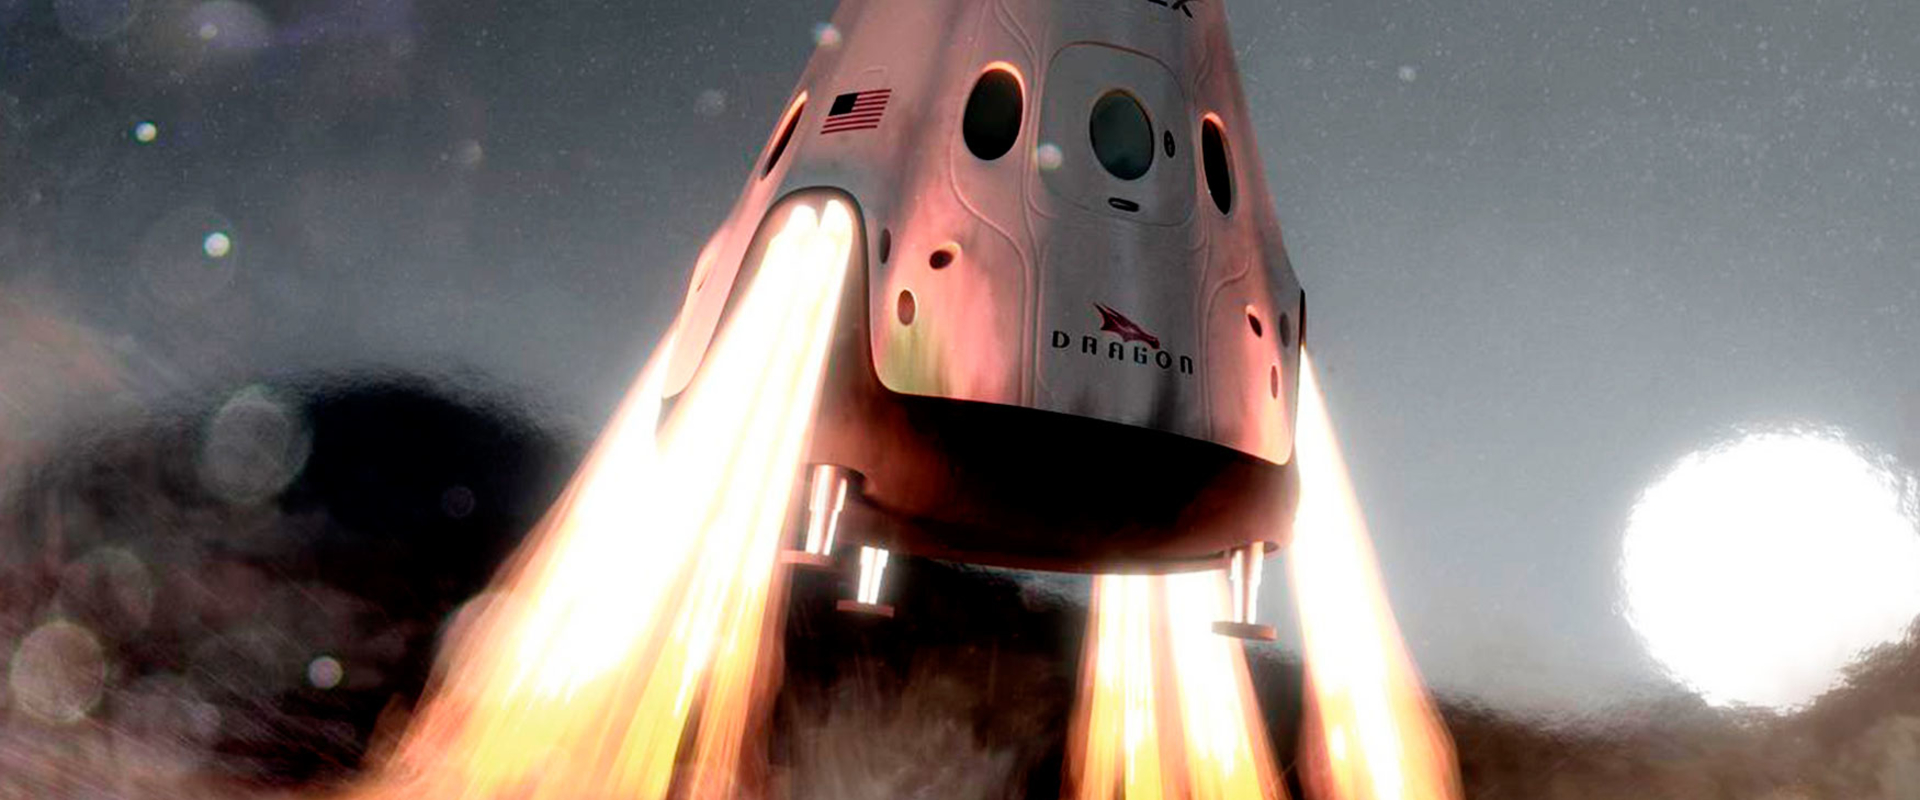 Илон Маск анонсировал полет Crew Dragon к МКС в феврале 2019 года